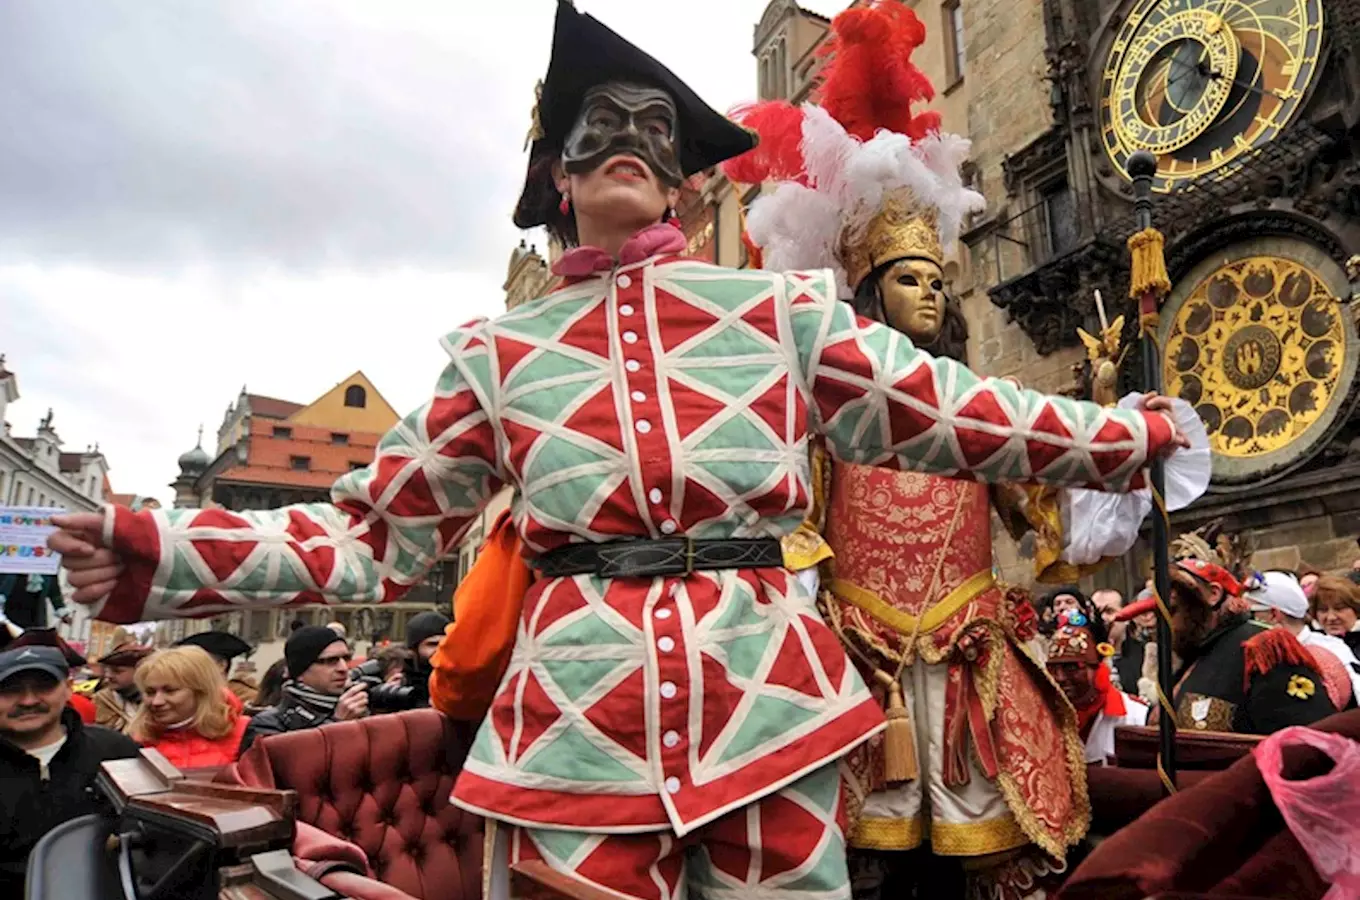 Dnes se otevře Praha festivalu Bohemian Carnevale 